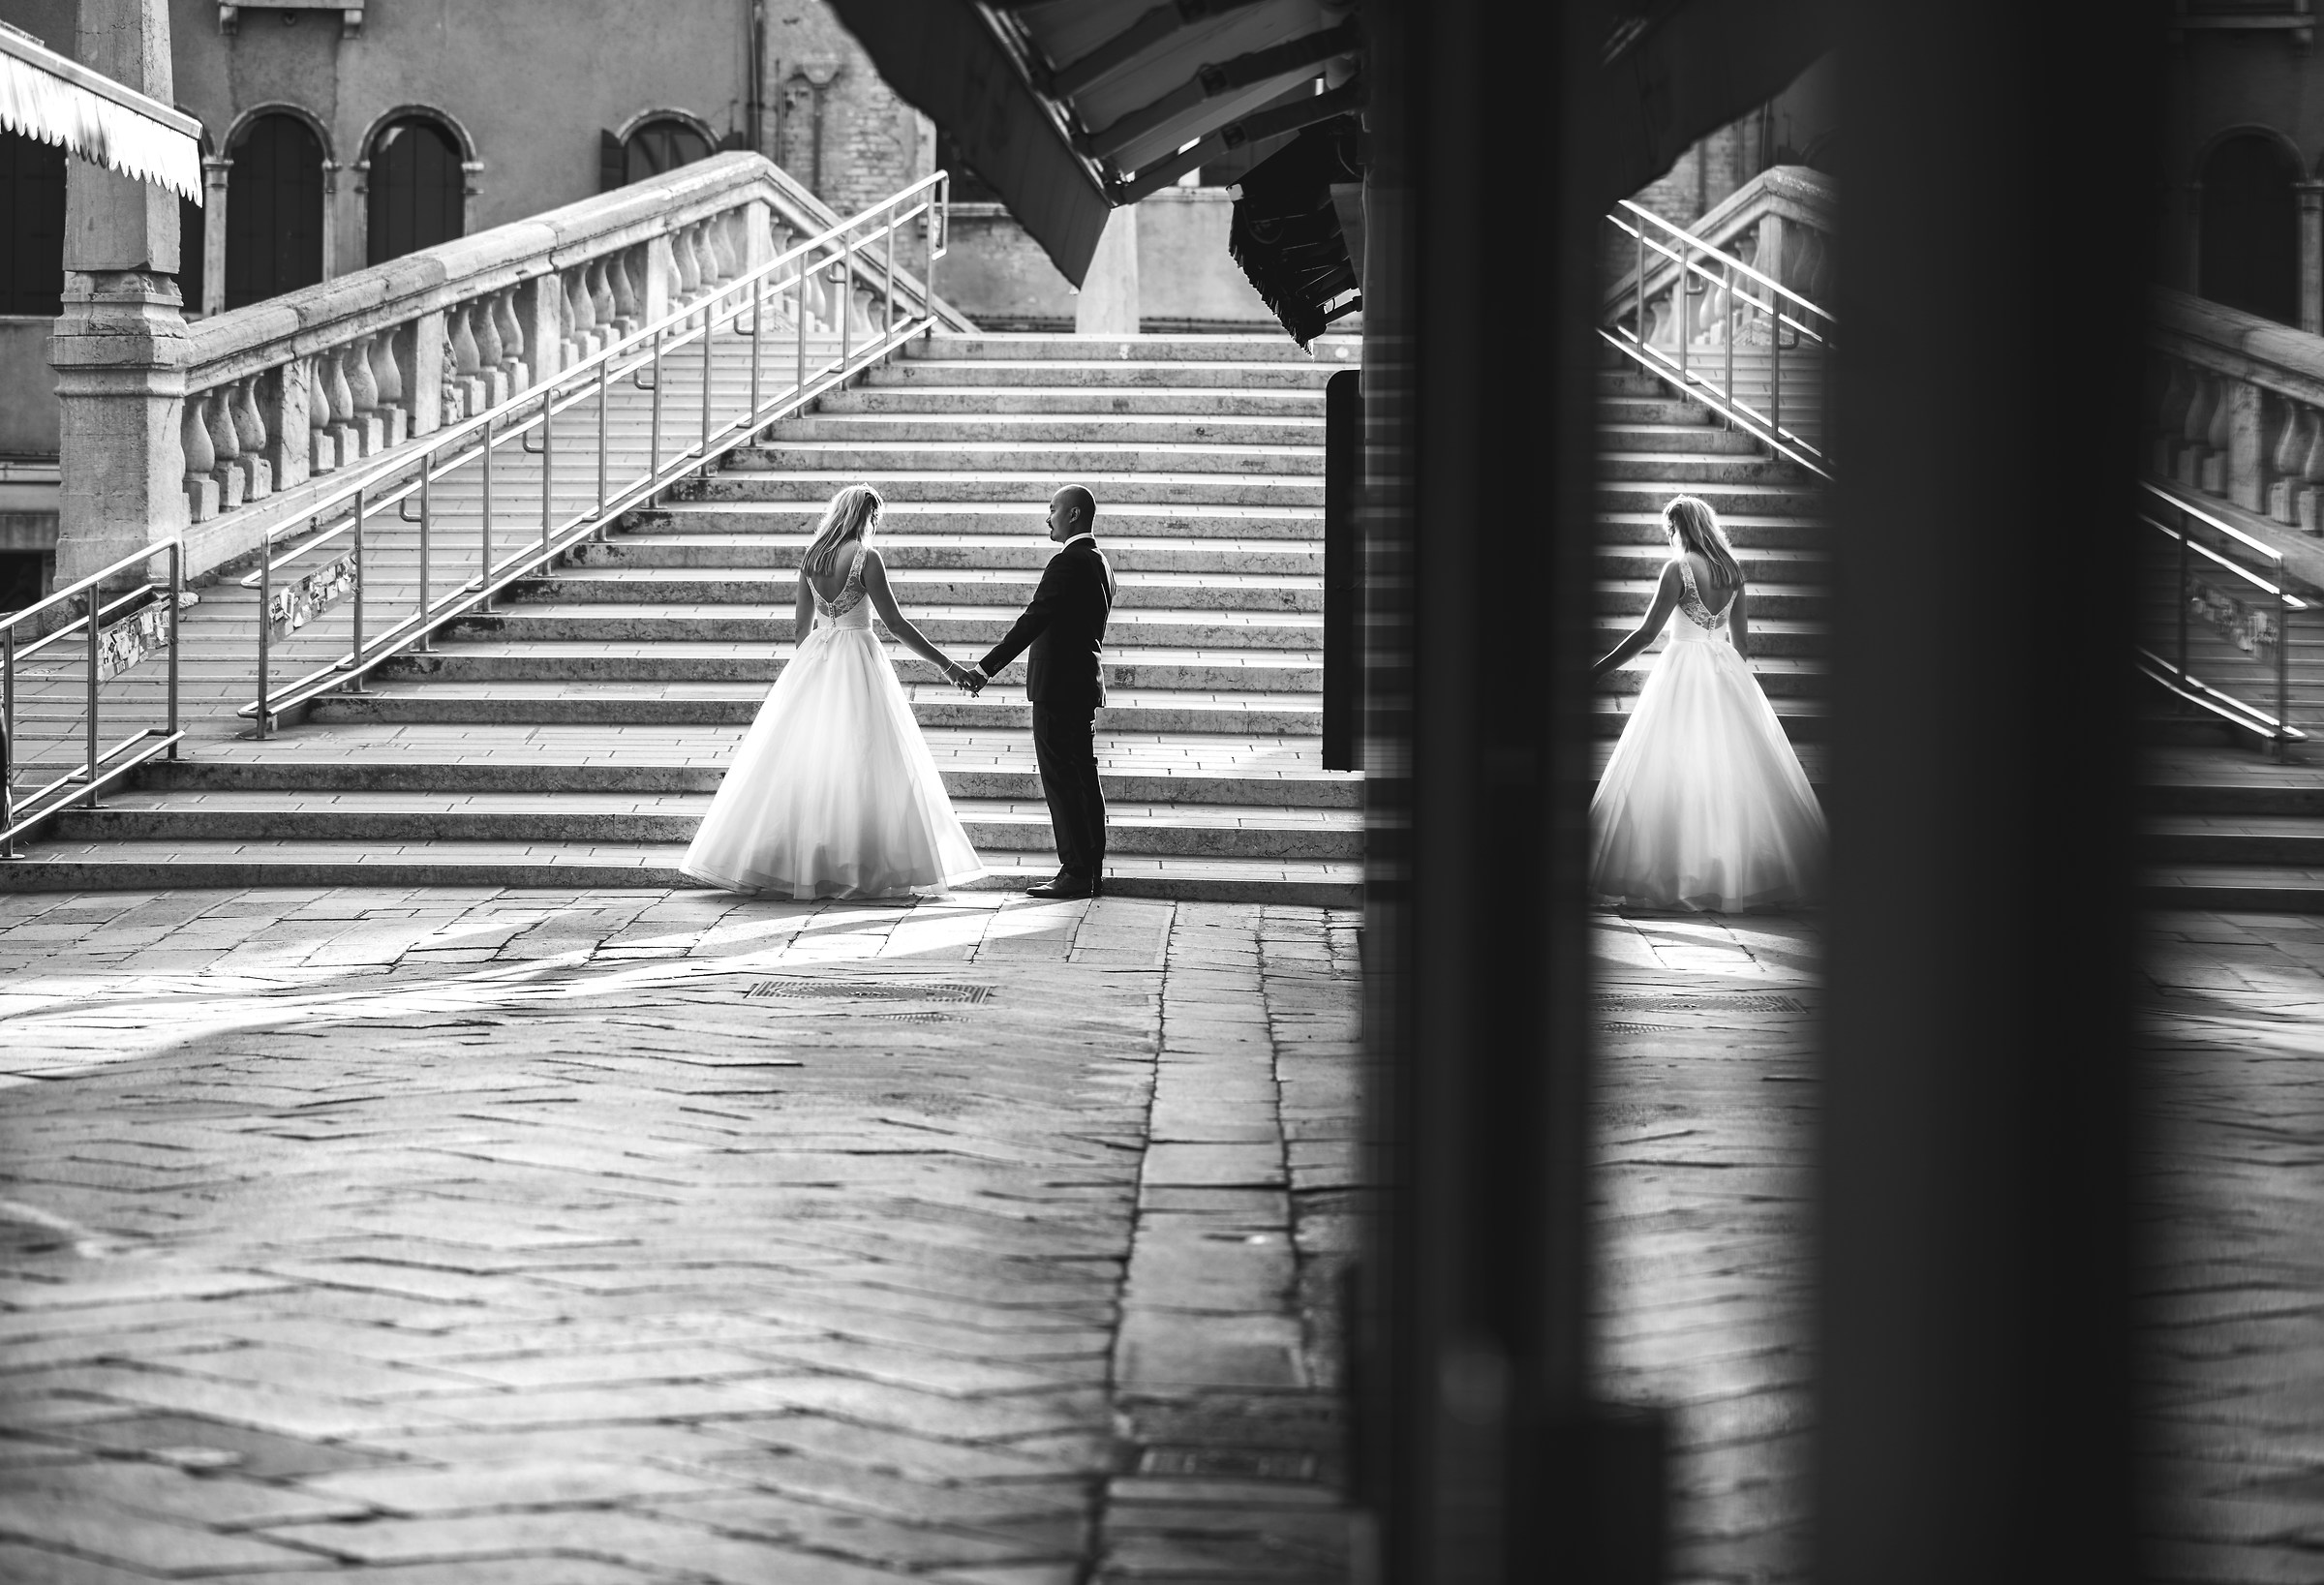 Wedding in Venice...